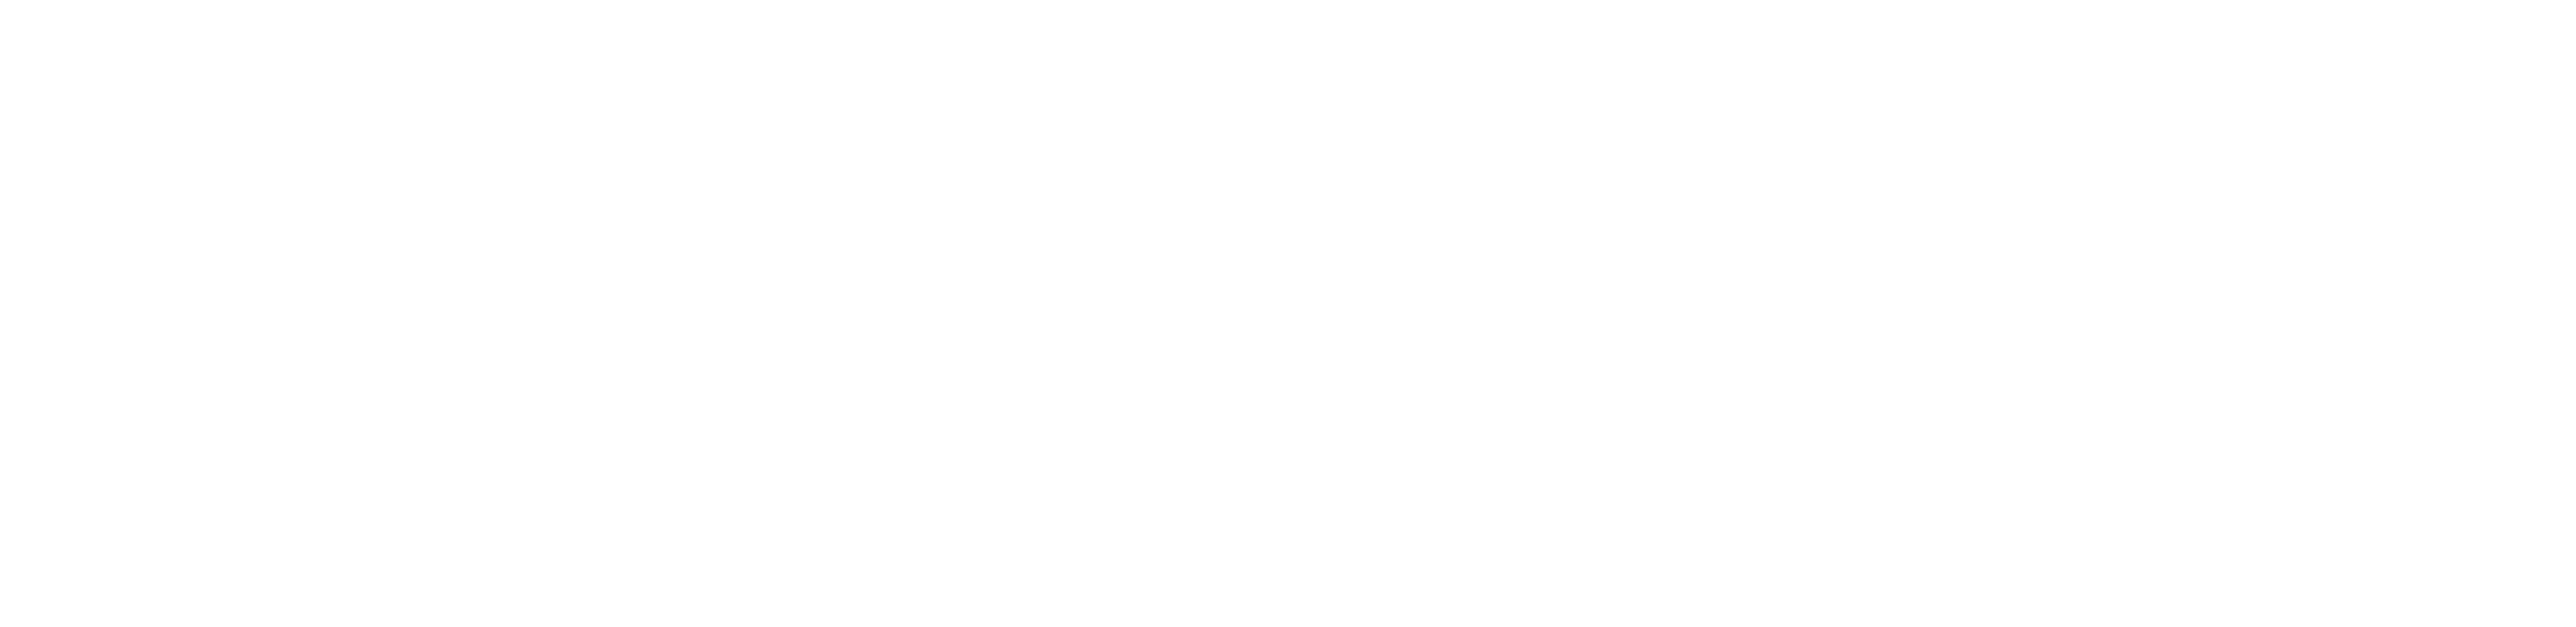 Arevon footer logo